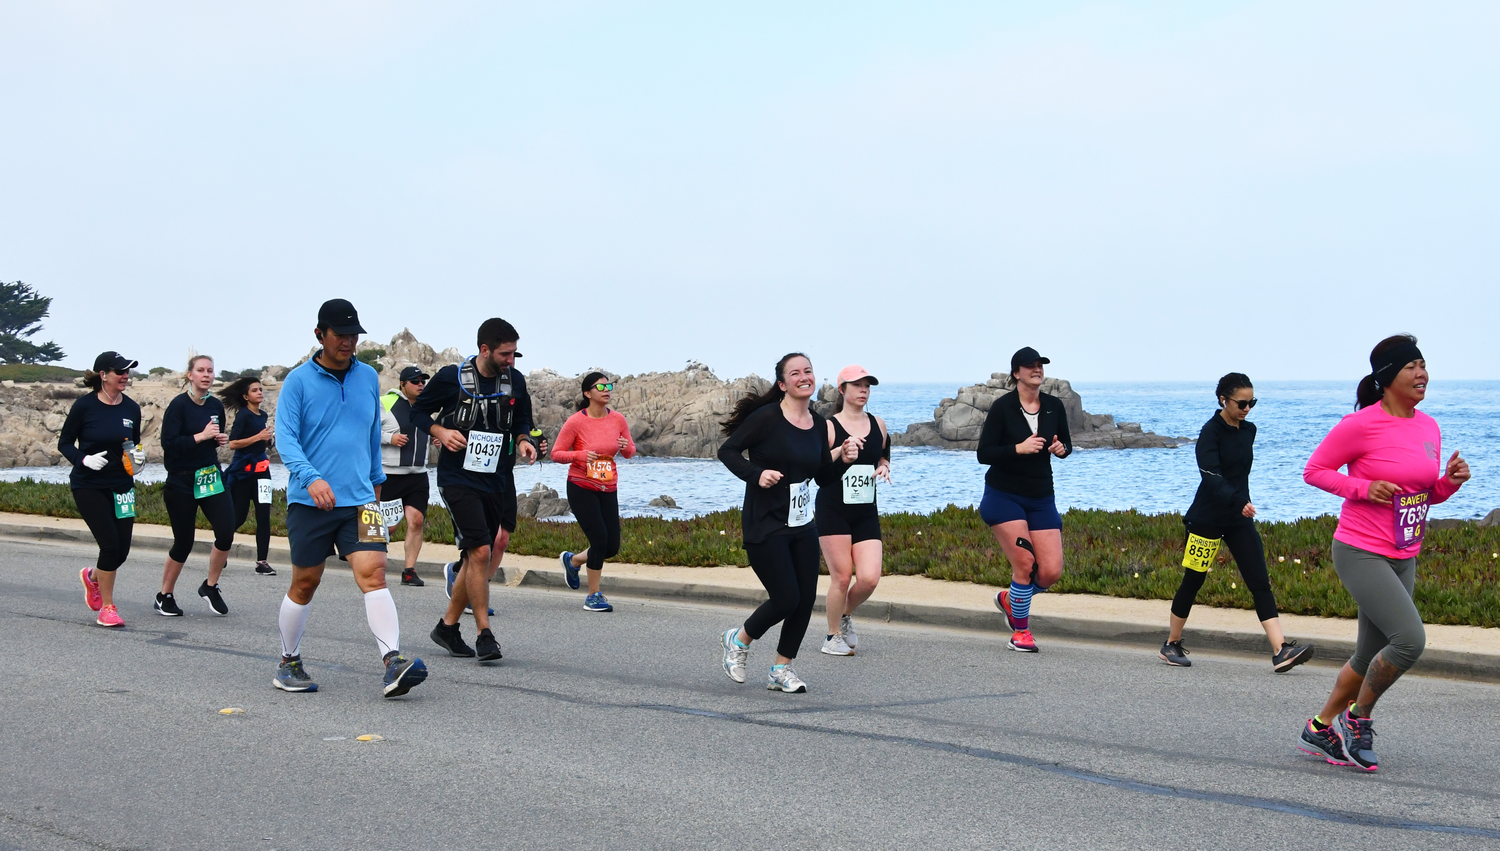 2019 Monterey Bay Half Marathon Photo Gallery – Monterey Bay Half Marathon